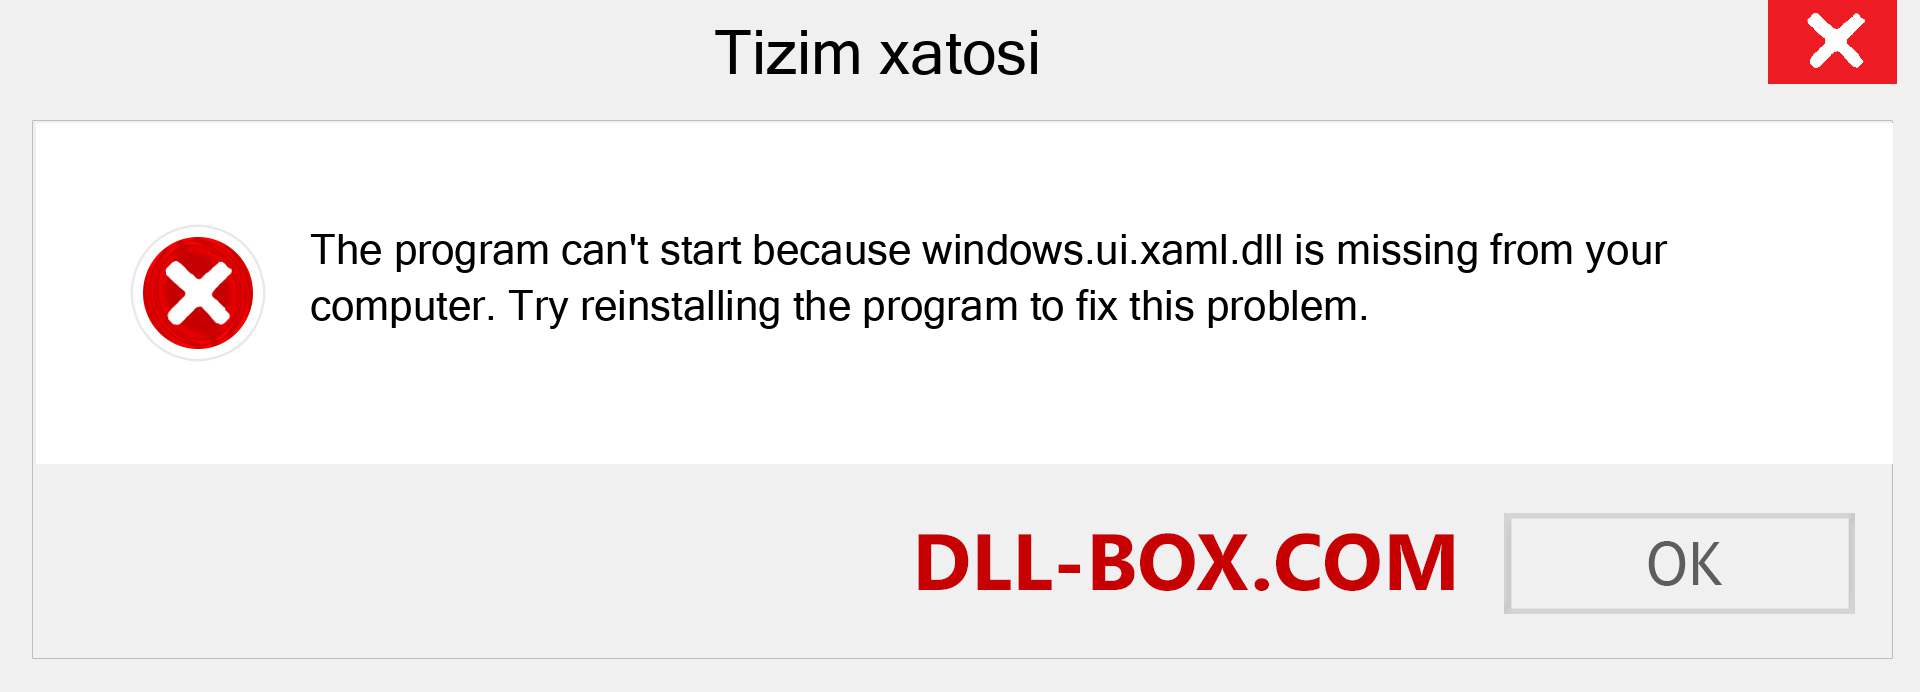 windows.ui.xaml.dll fayli yo'qolganmi?. Windows 7, 8, 10 uchun yuklab olish - Windowsda windows.ui.xaml dll etishmayotgan xatoni tuzating, rasmlar, rasmlar